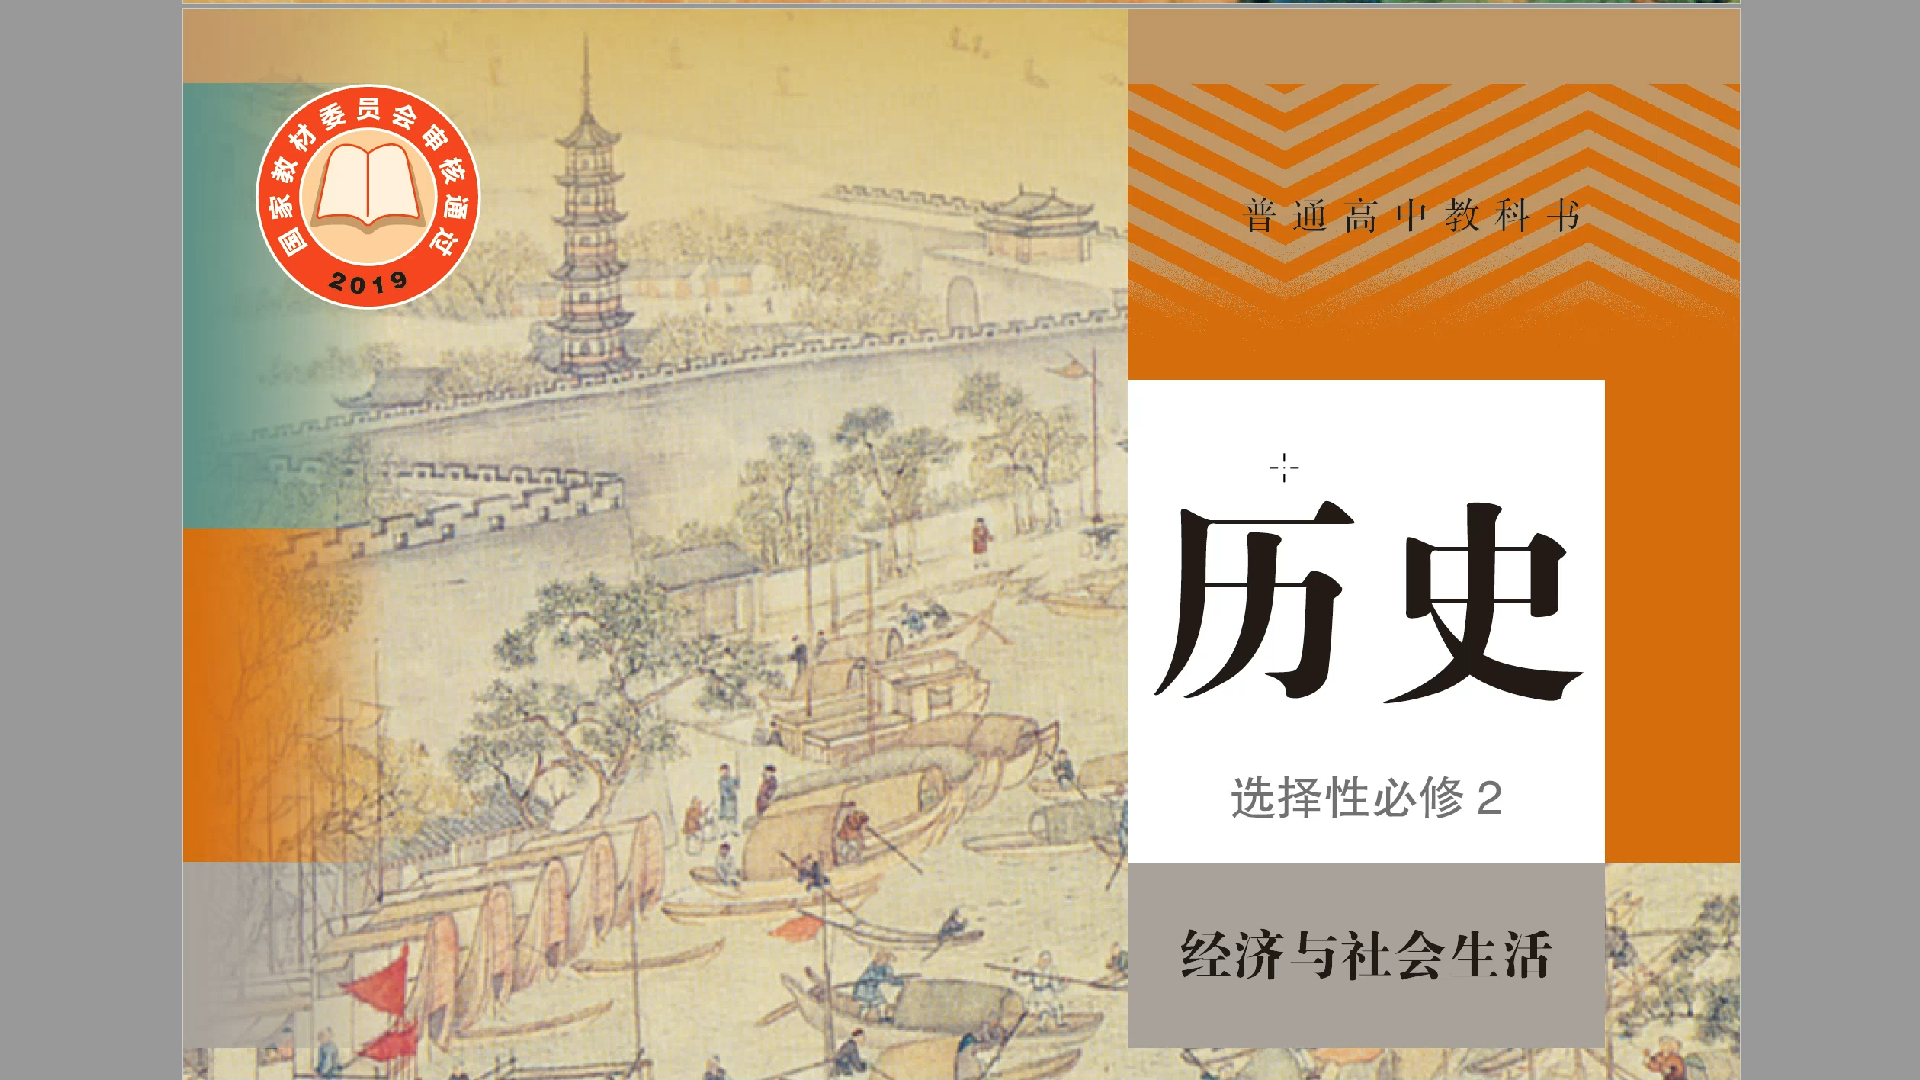 大陆人教版和台湾翰林版高中历史选修课本内容比较